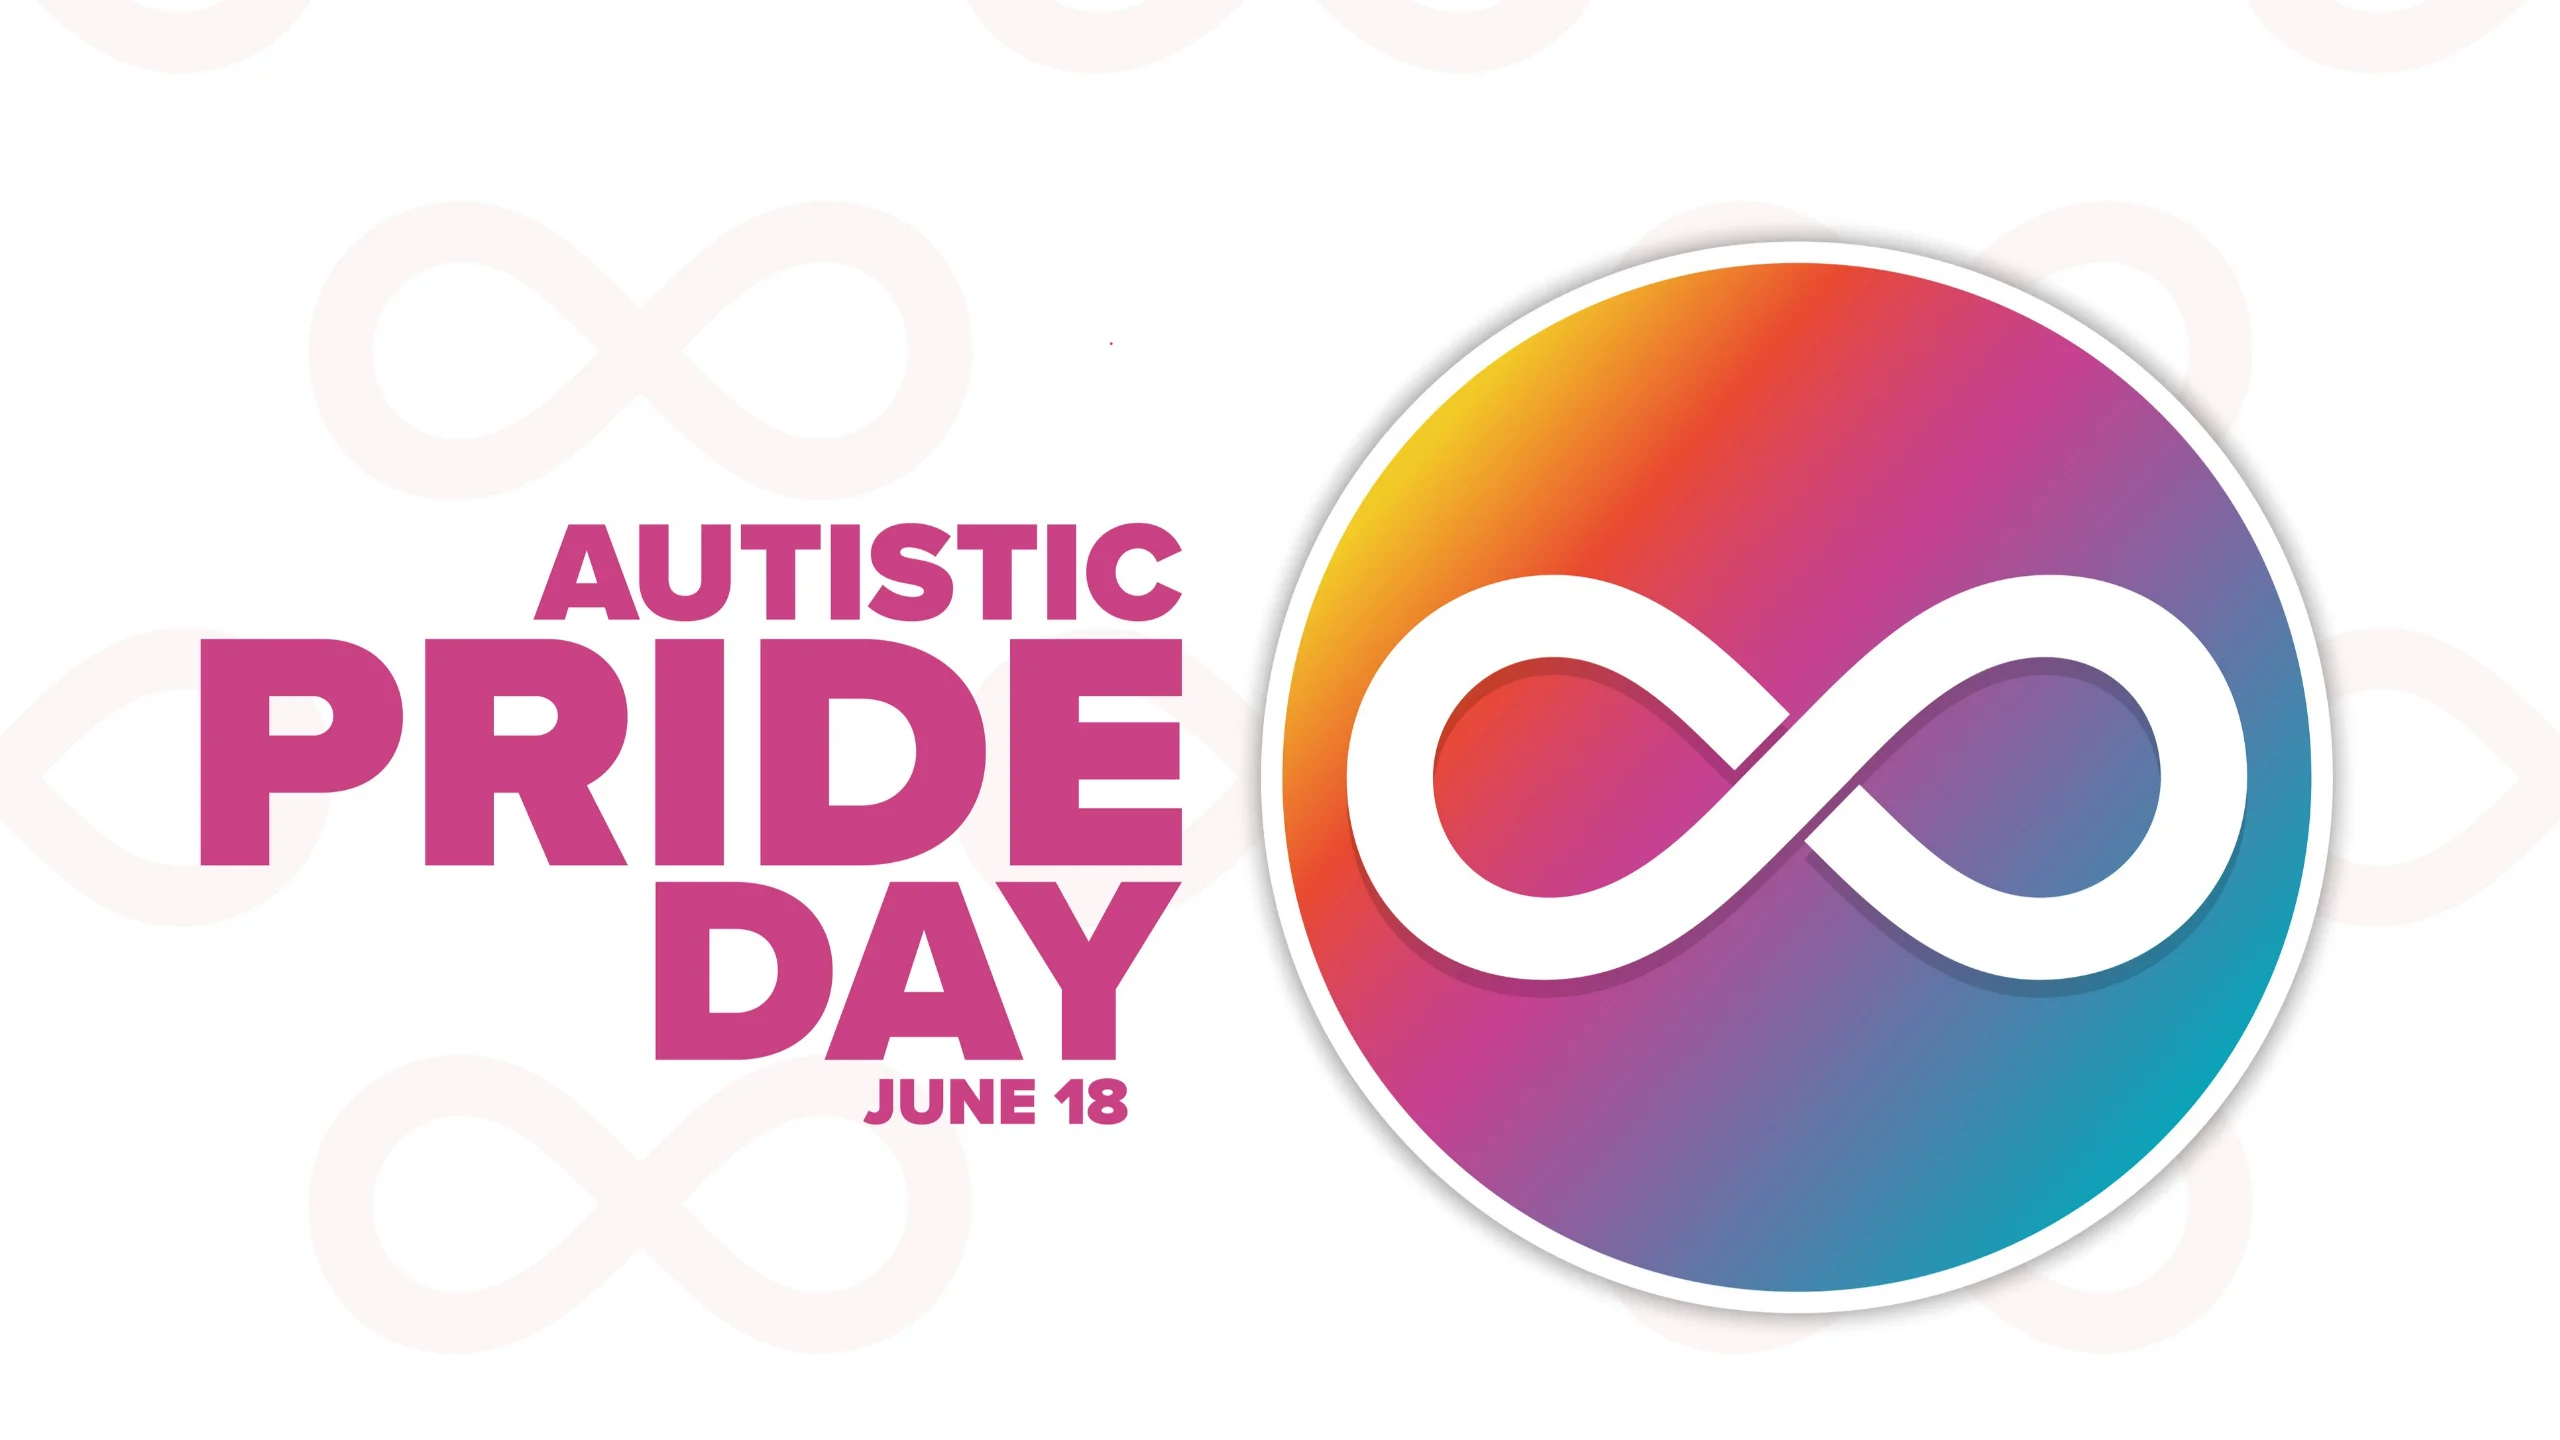 dia do orgulho autista: imagem tem o símbolo da neurodiversidade sobre um círculo colorido e as palavras "autistic pride day"